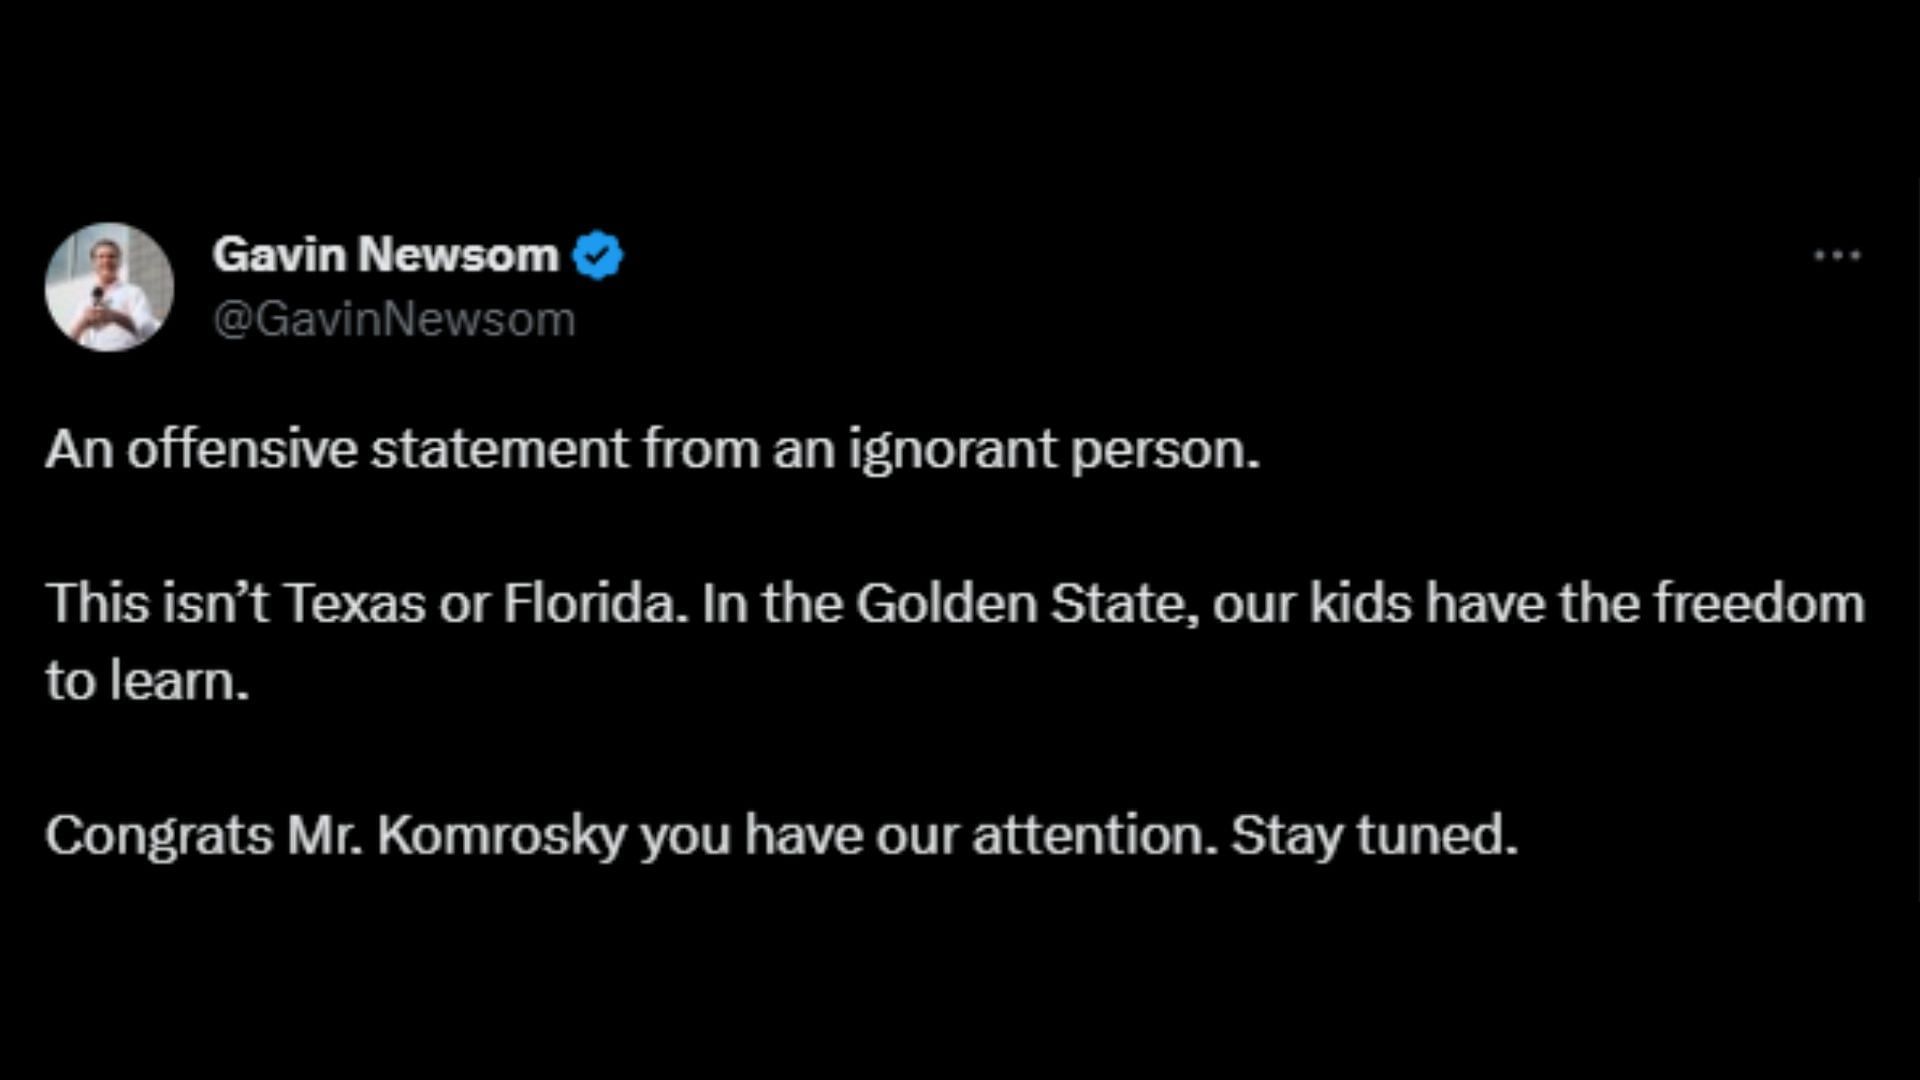 Screenshot of Gavin Newsom&#039;s tweet slamming Dr. Joseph Komrosky over the remarks made on Harvey Milk.